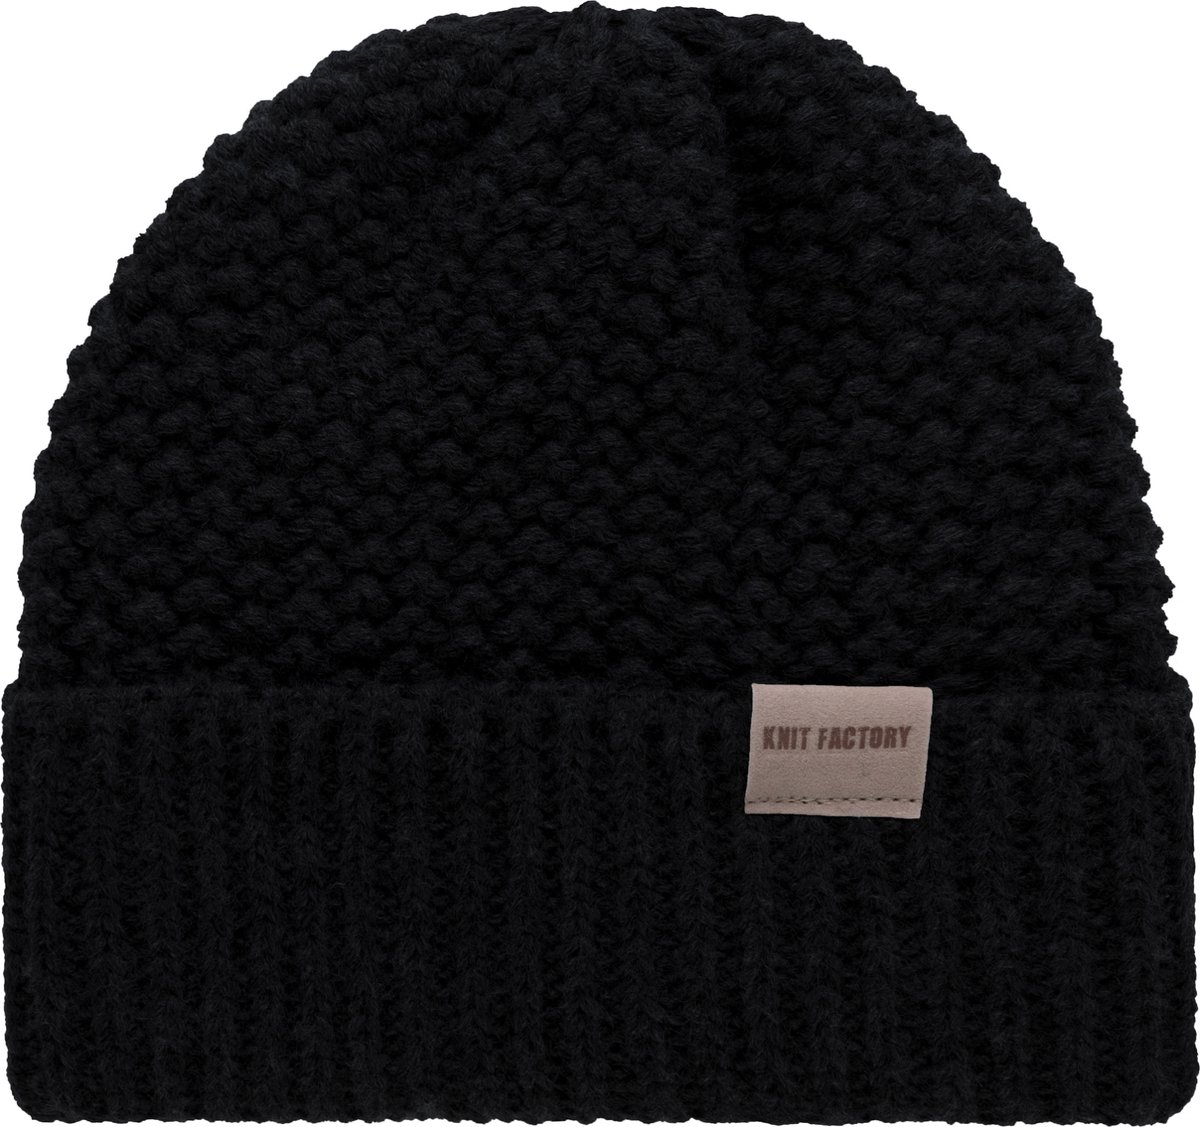 Knit Factory Carry Gebreide Muts Heren & Dames - Beanie hat - Zwart - Grofgebreid - Warme zwarte Wintermuts - Unisex - One Size